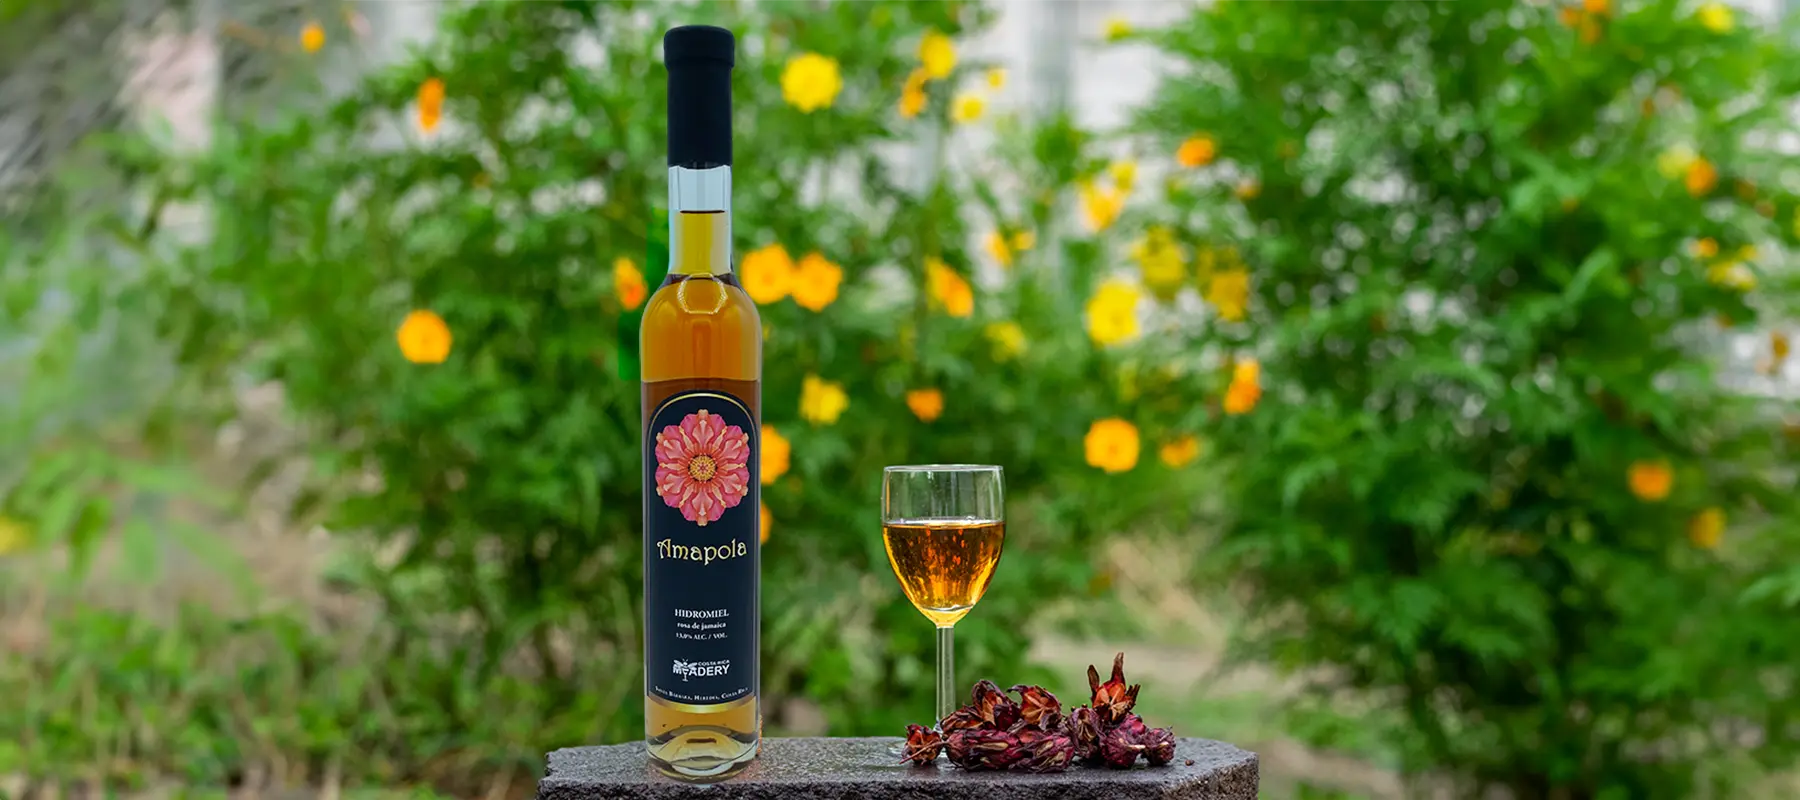 AMAPOLA - honey wine with hibiscus flowers